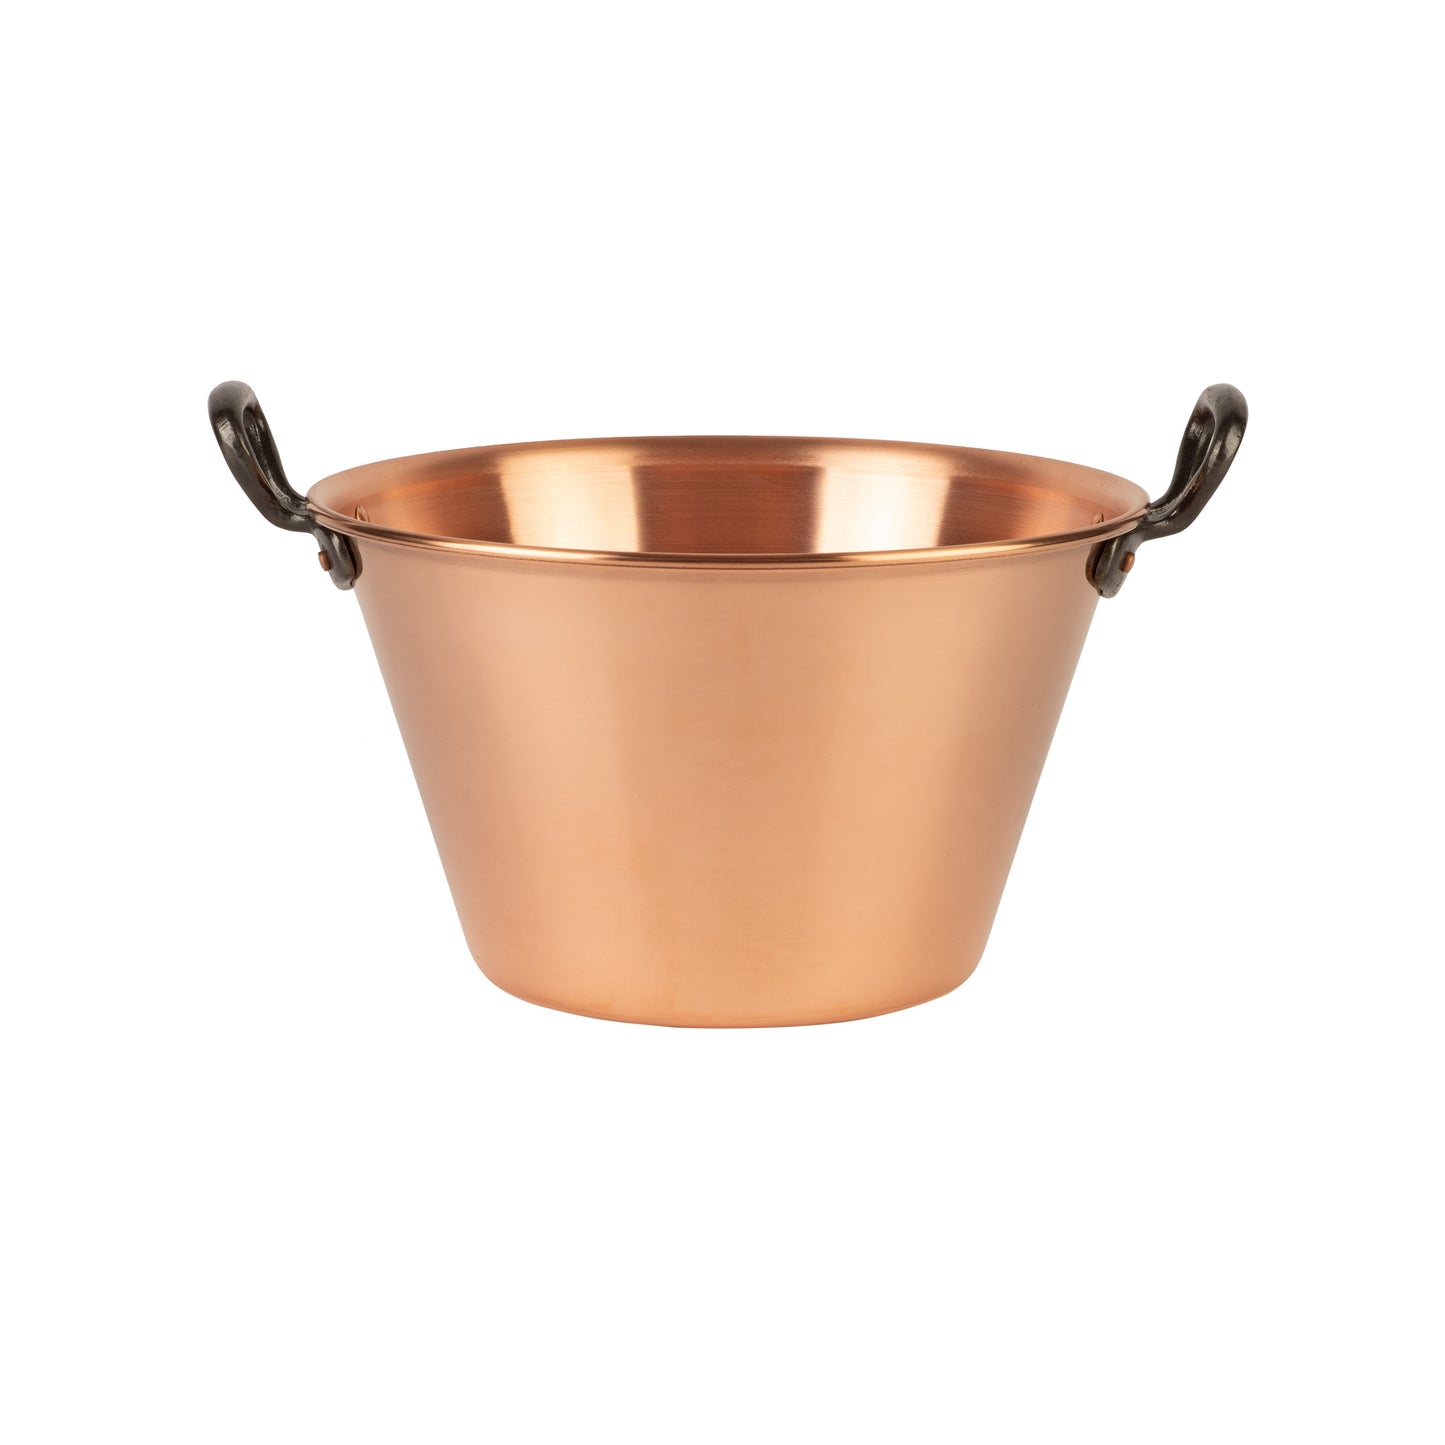 Copper jam pot with cast iron handles, 4.2 qt